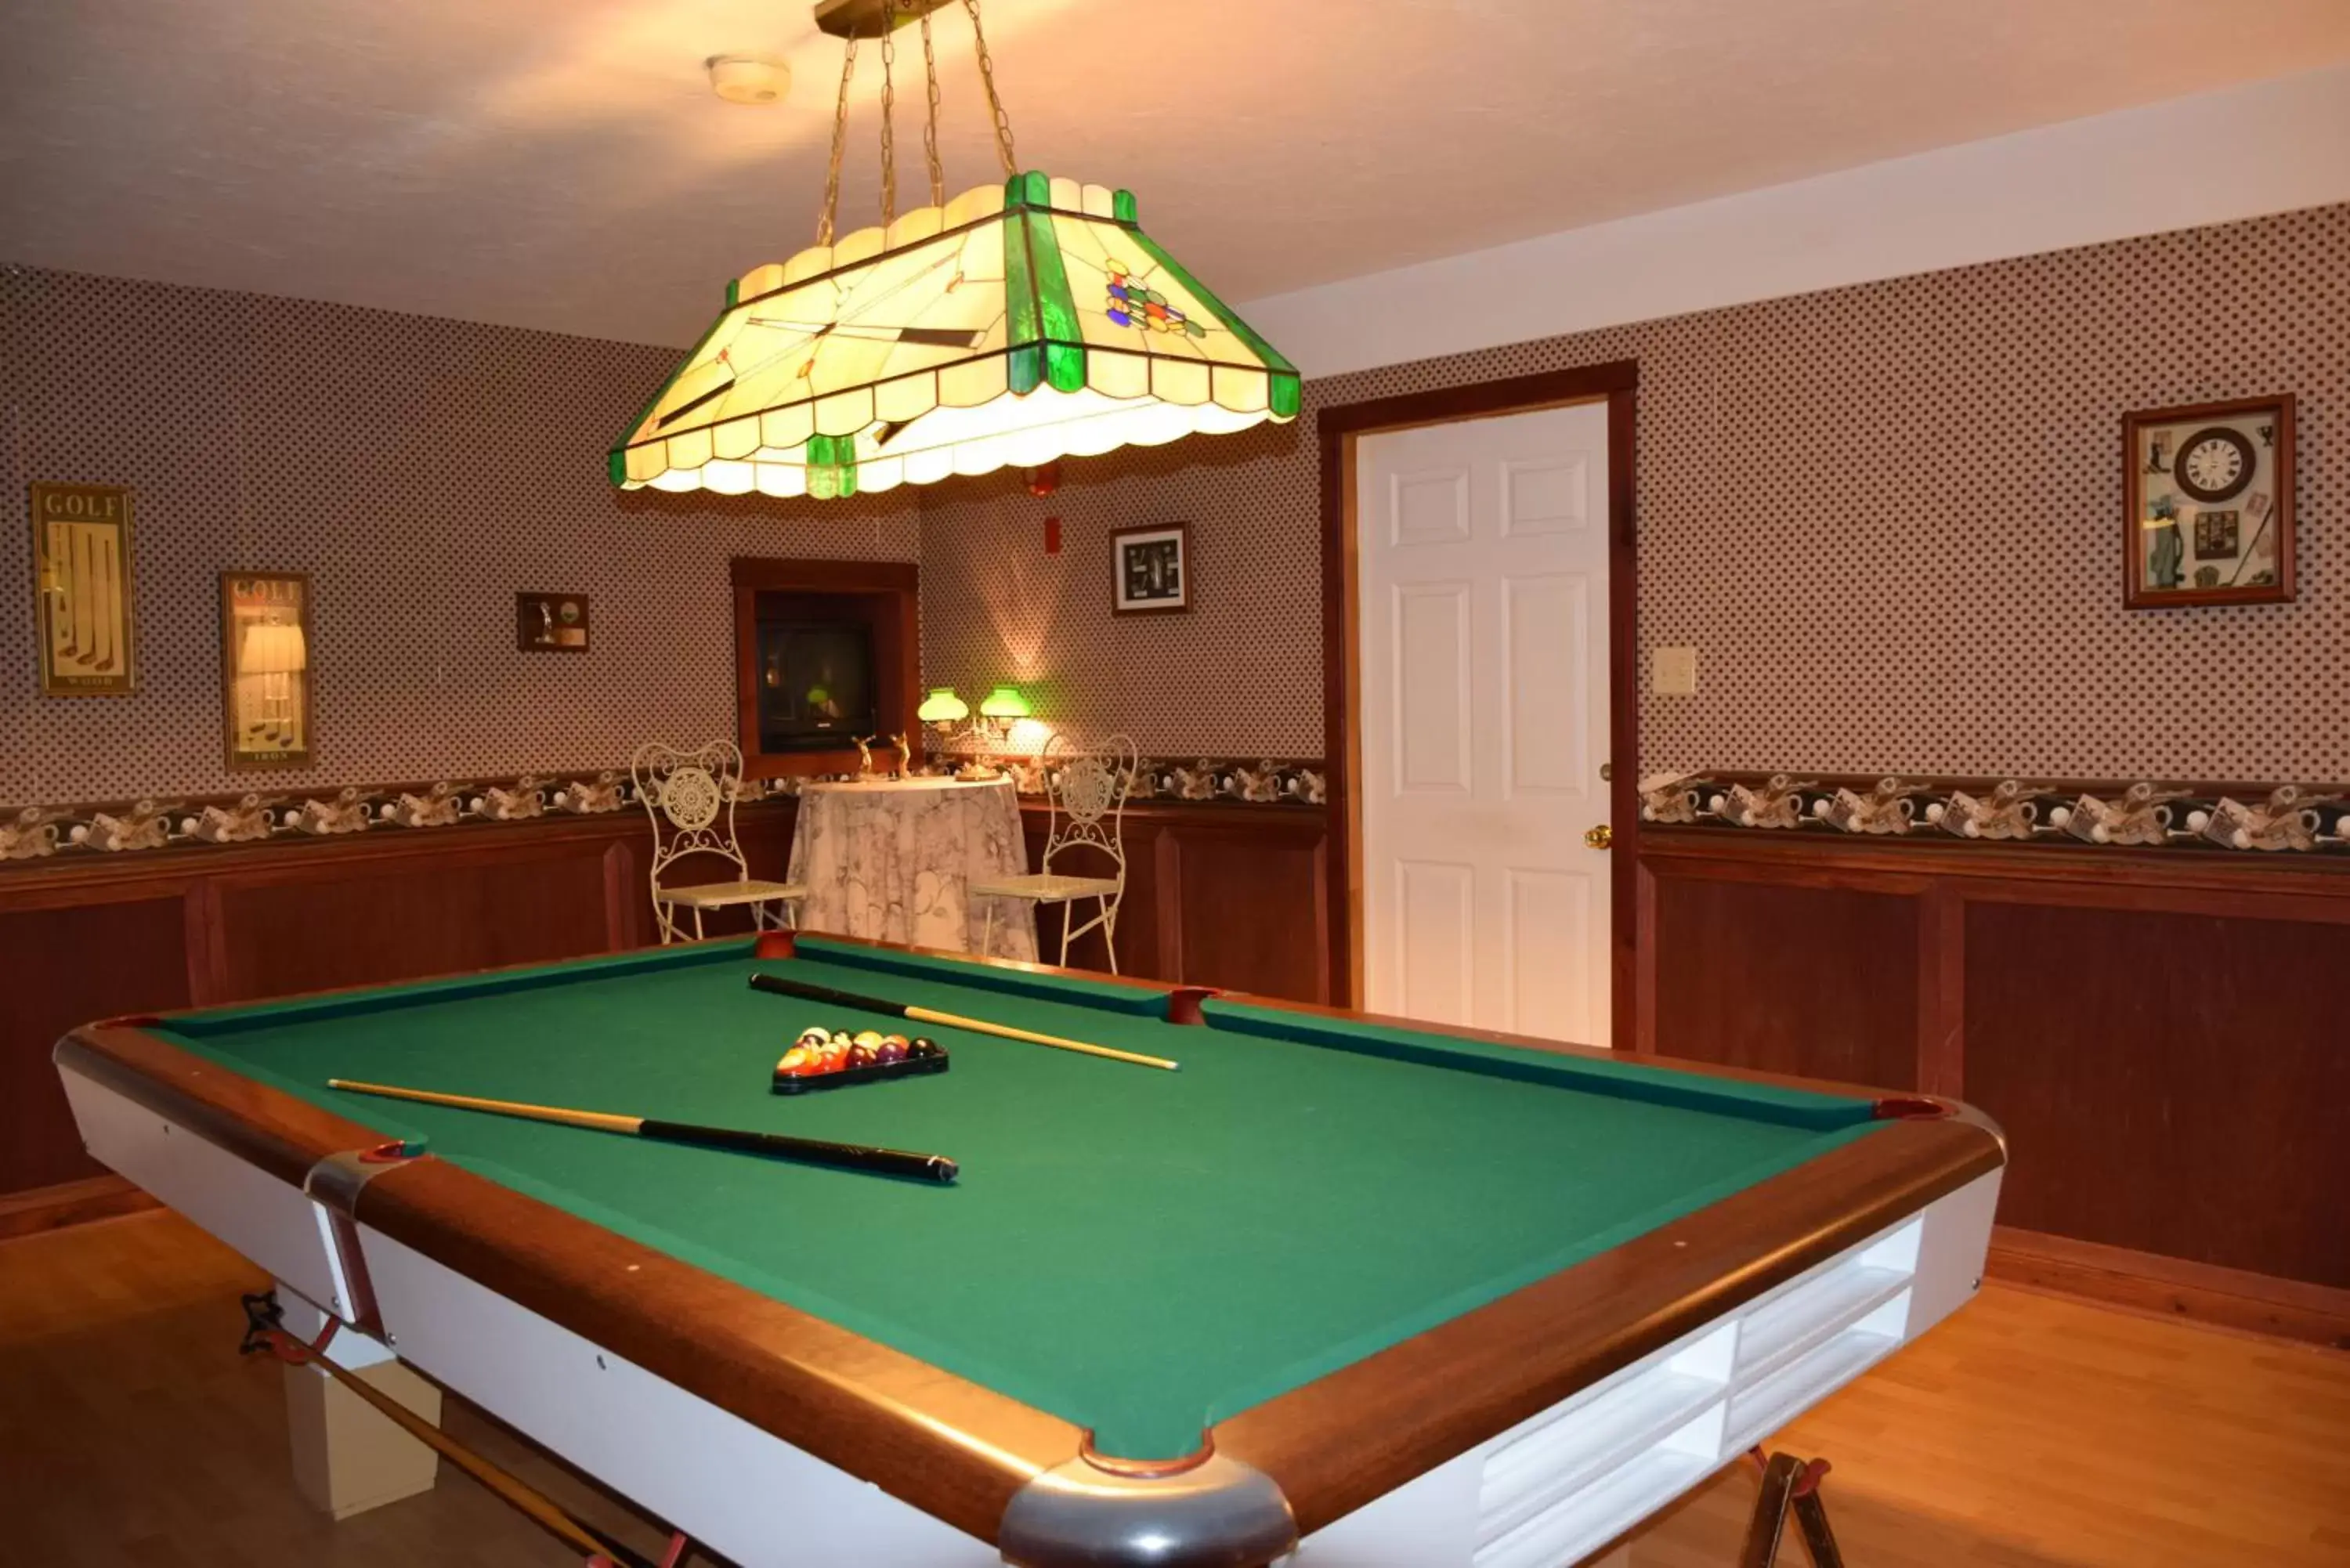 Game Room, Billiards in Auberge Wild Rose Inn